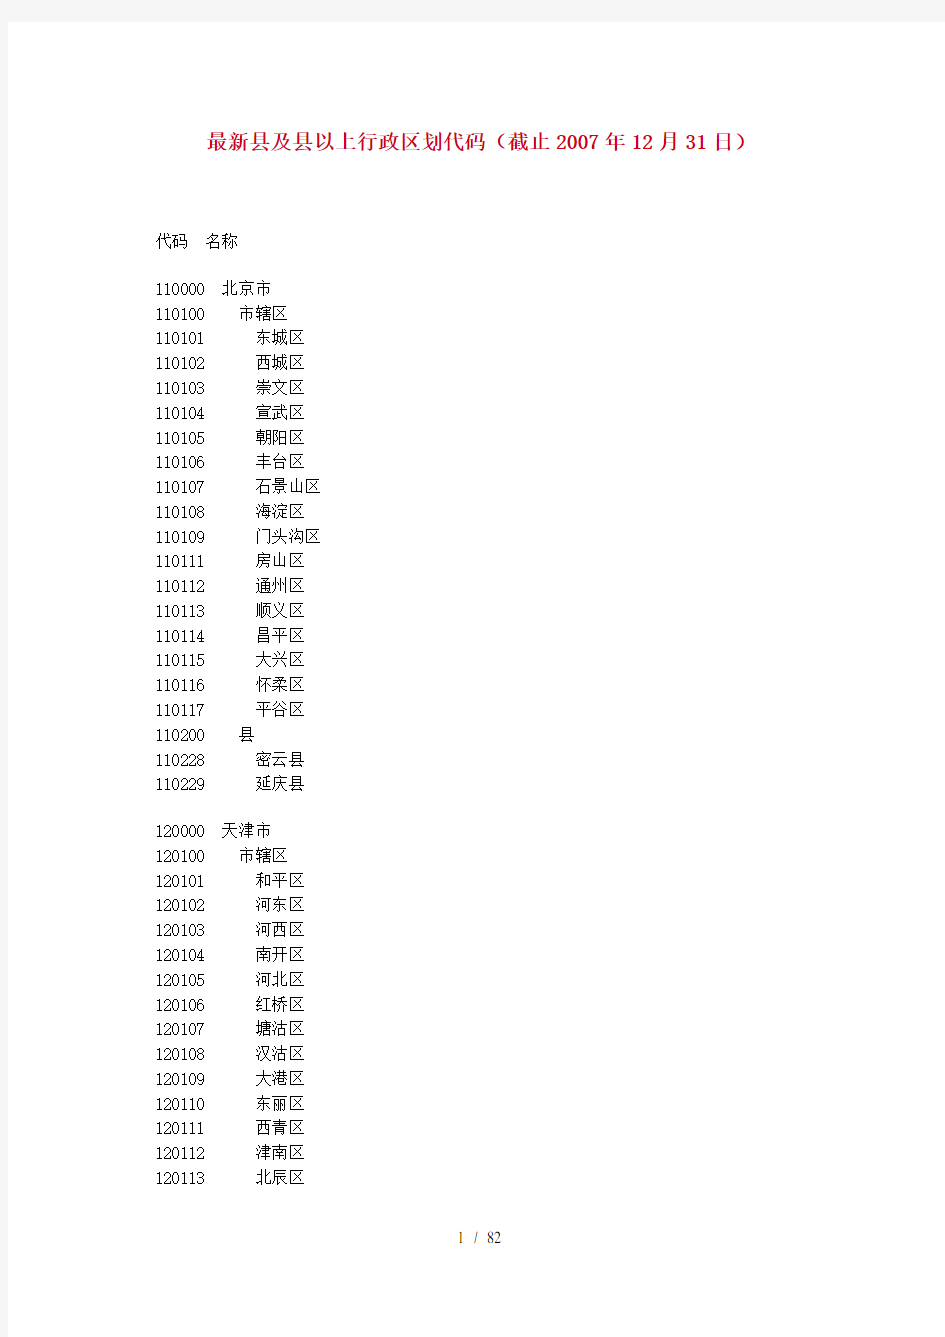 GBT中华人民共和国行政区划代码